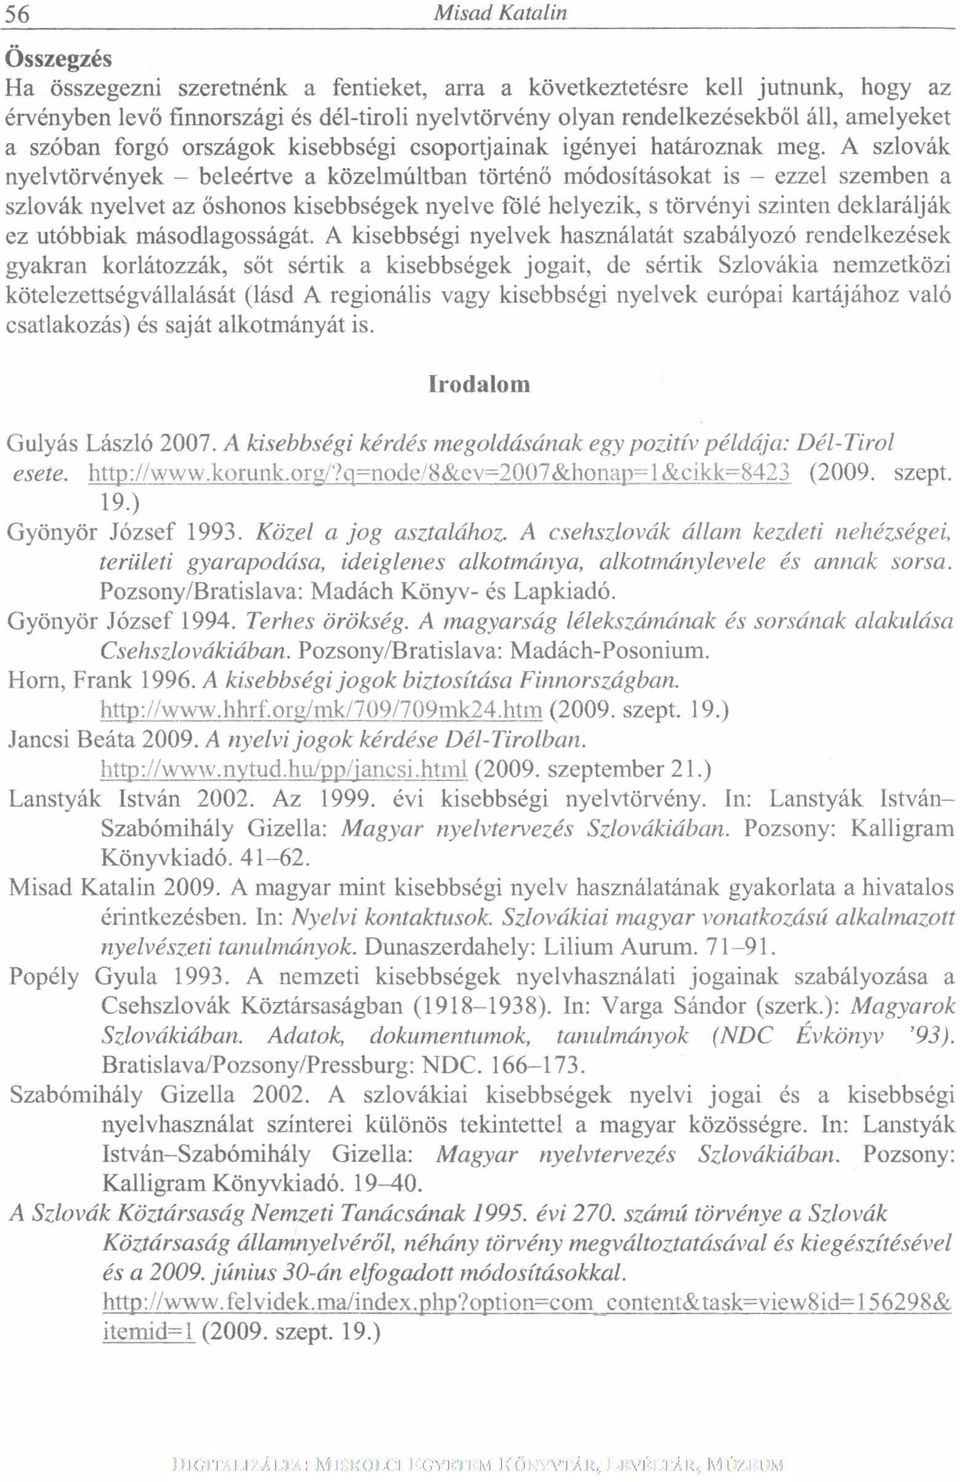 A szlovák nyelvtörvények - beleértve a közelmúltban történő módosításokat is - ezzel szemben a szlovák nyelvet az őshonos kisebbségek nyelve fölé helyezik, s törvényi szinten deklarálják ez utóbbiak